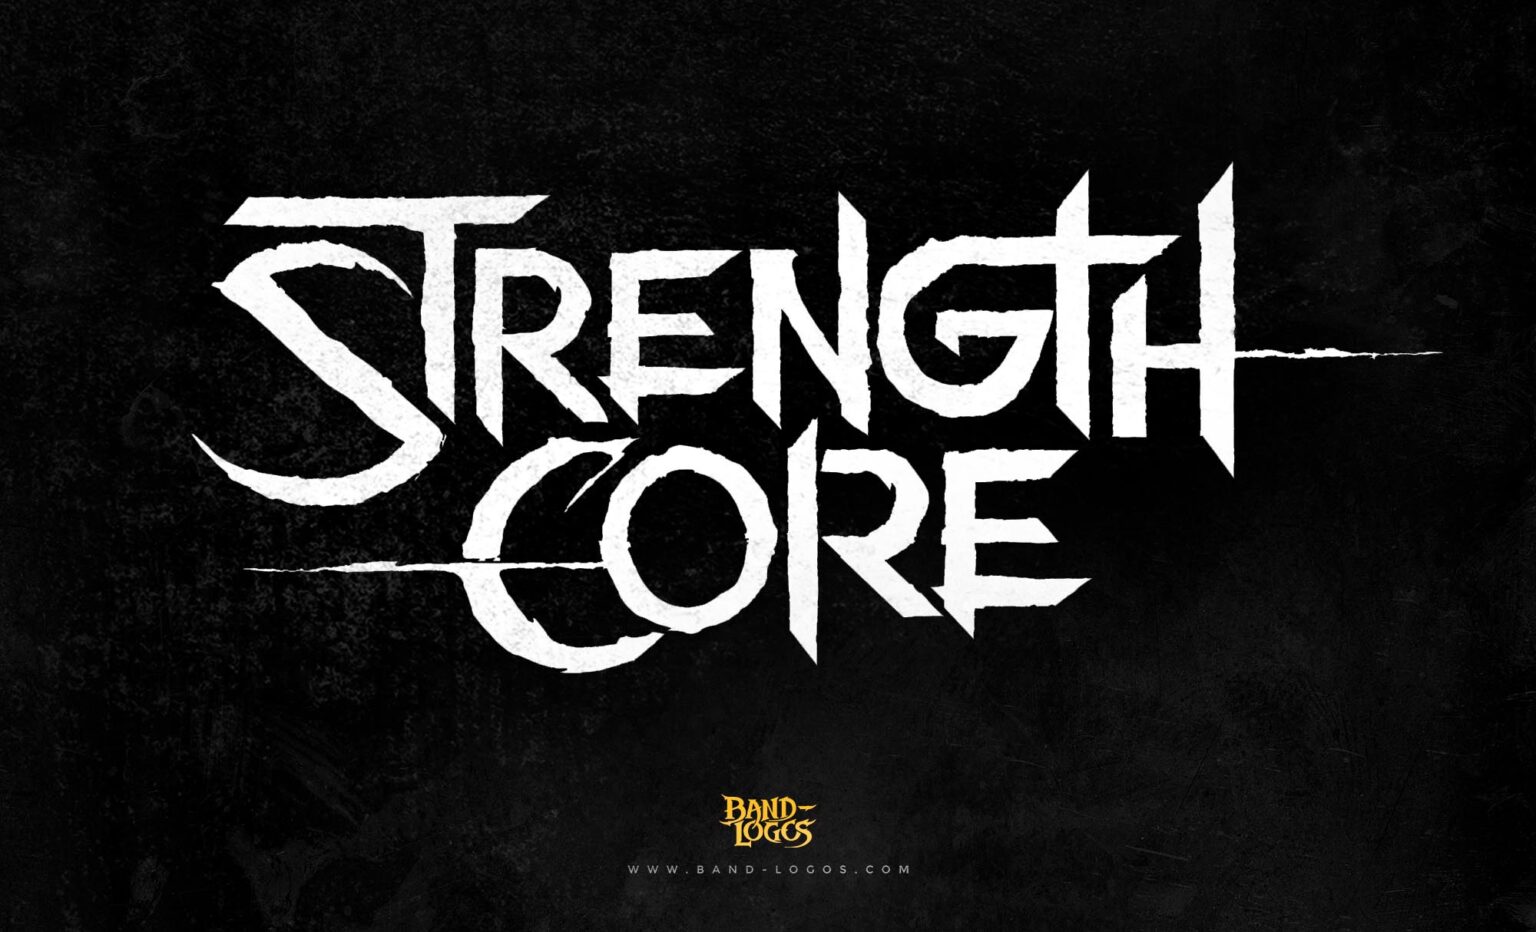 Rock Band Logos - Strentgh Core